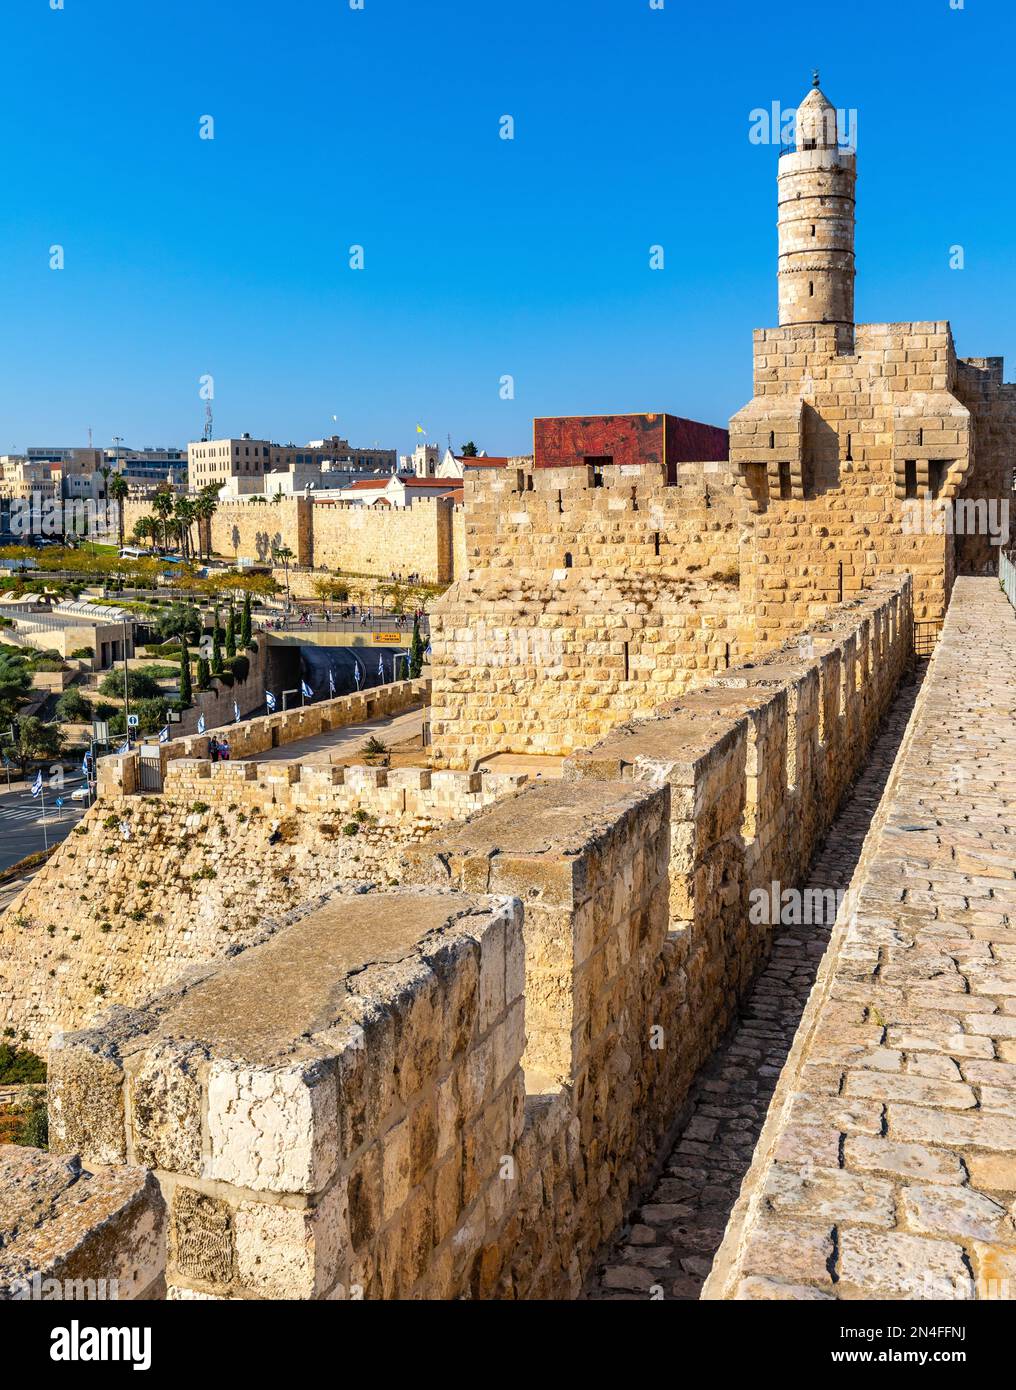 Jerusalem, Israel - 12. Oktober 2017: Osmanisches Minarett über Mauern und archäologische Ausgrabungsstätte der Festung der Davidsturm-Zitadelle in Jerusalem Stockfoto